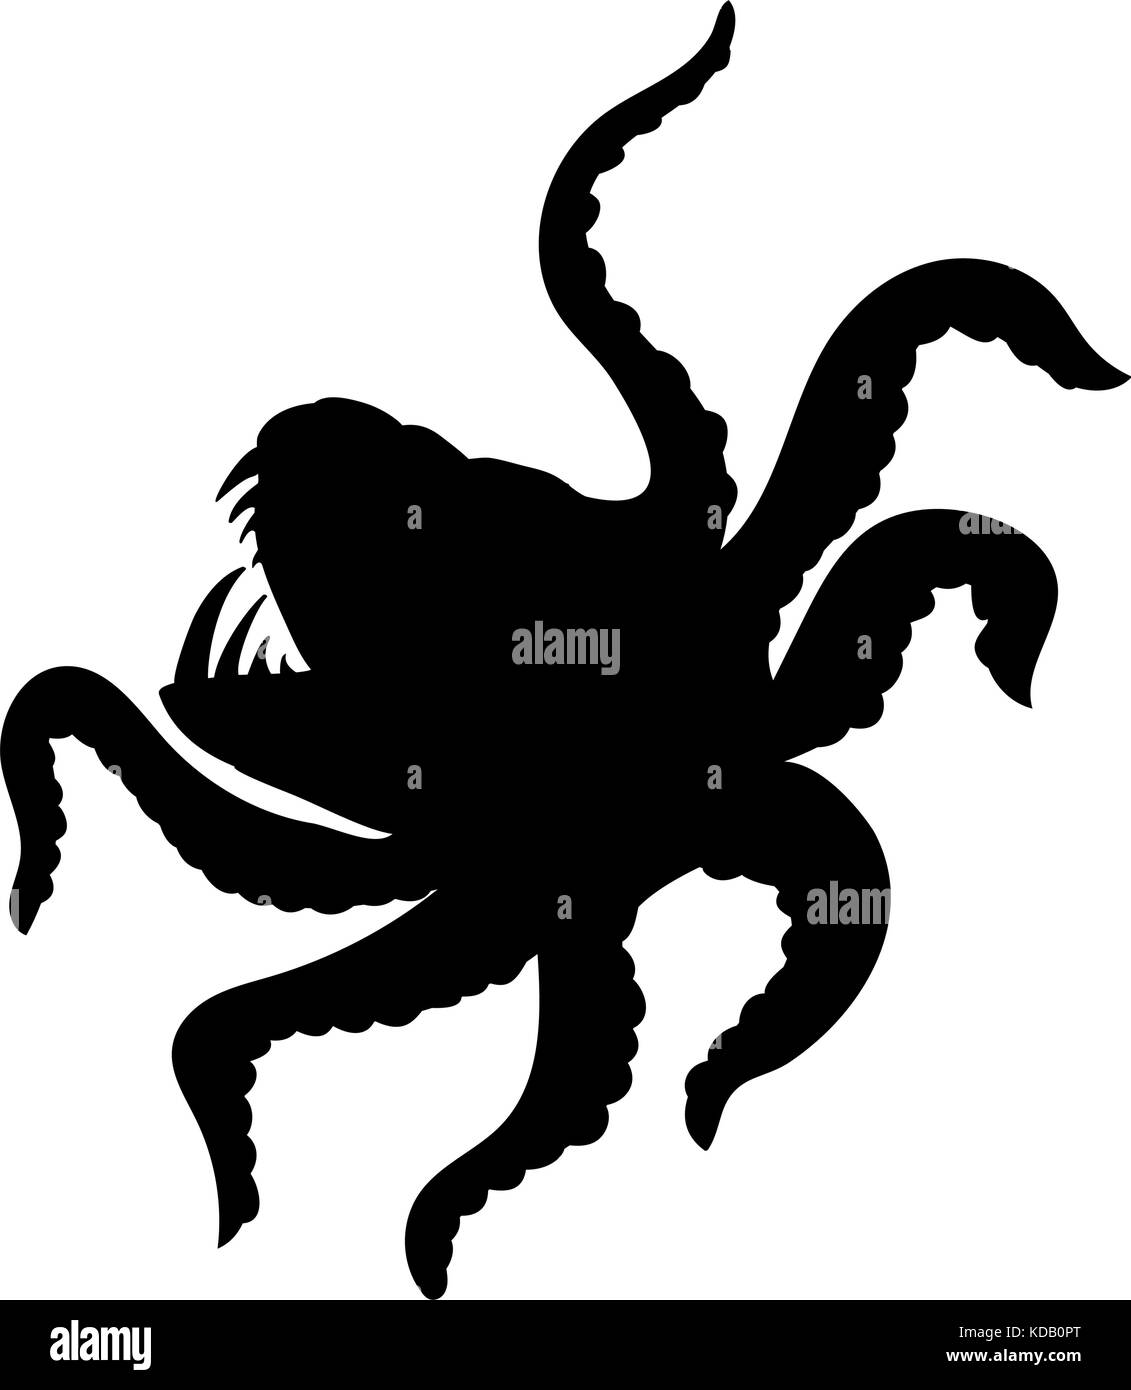 Kraken giant octopus silhouette ancient mythology fantasy. Vector illustration. Stock Vector